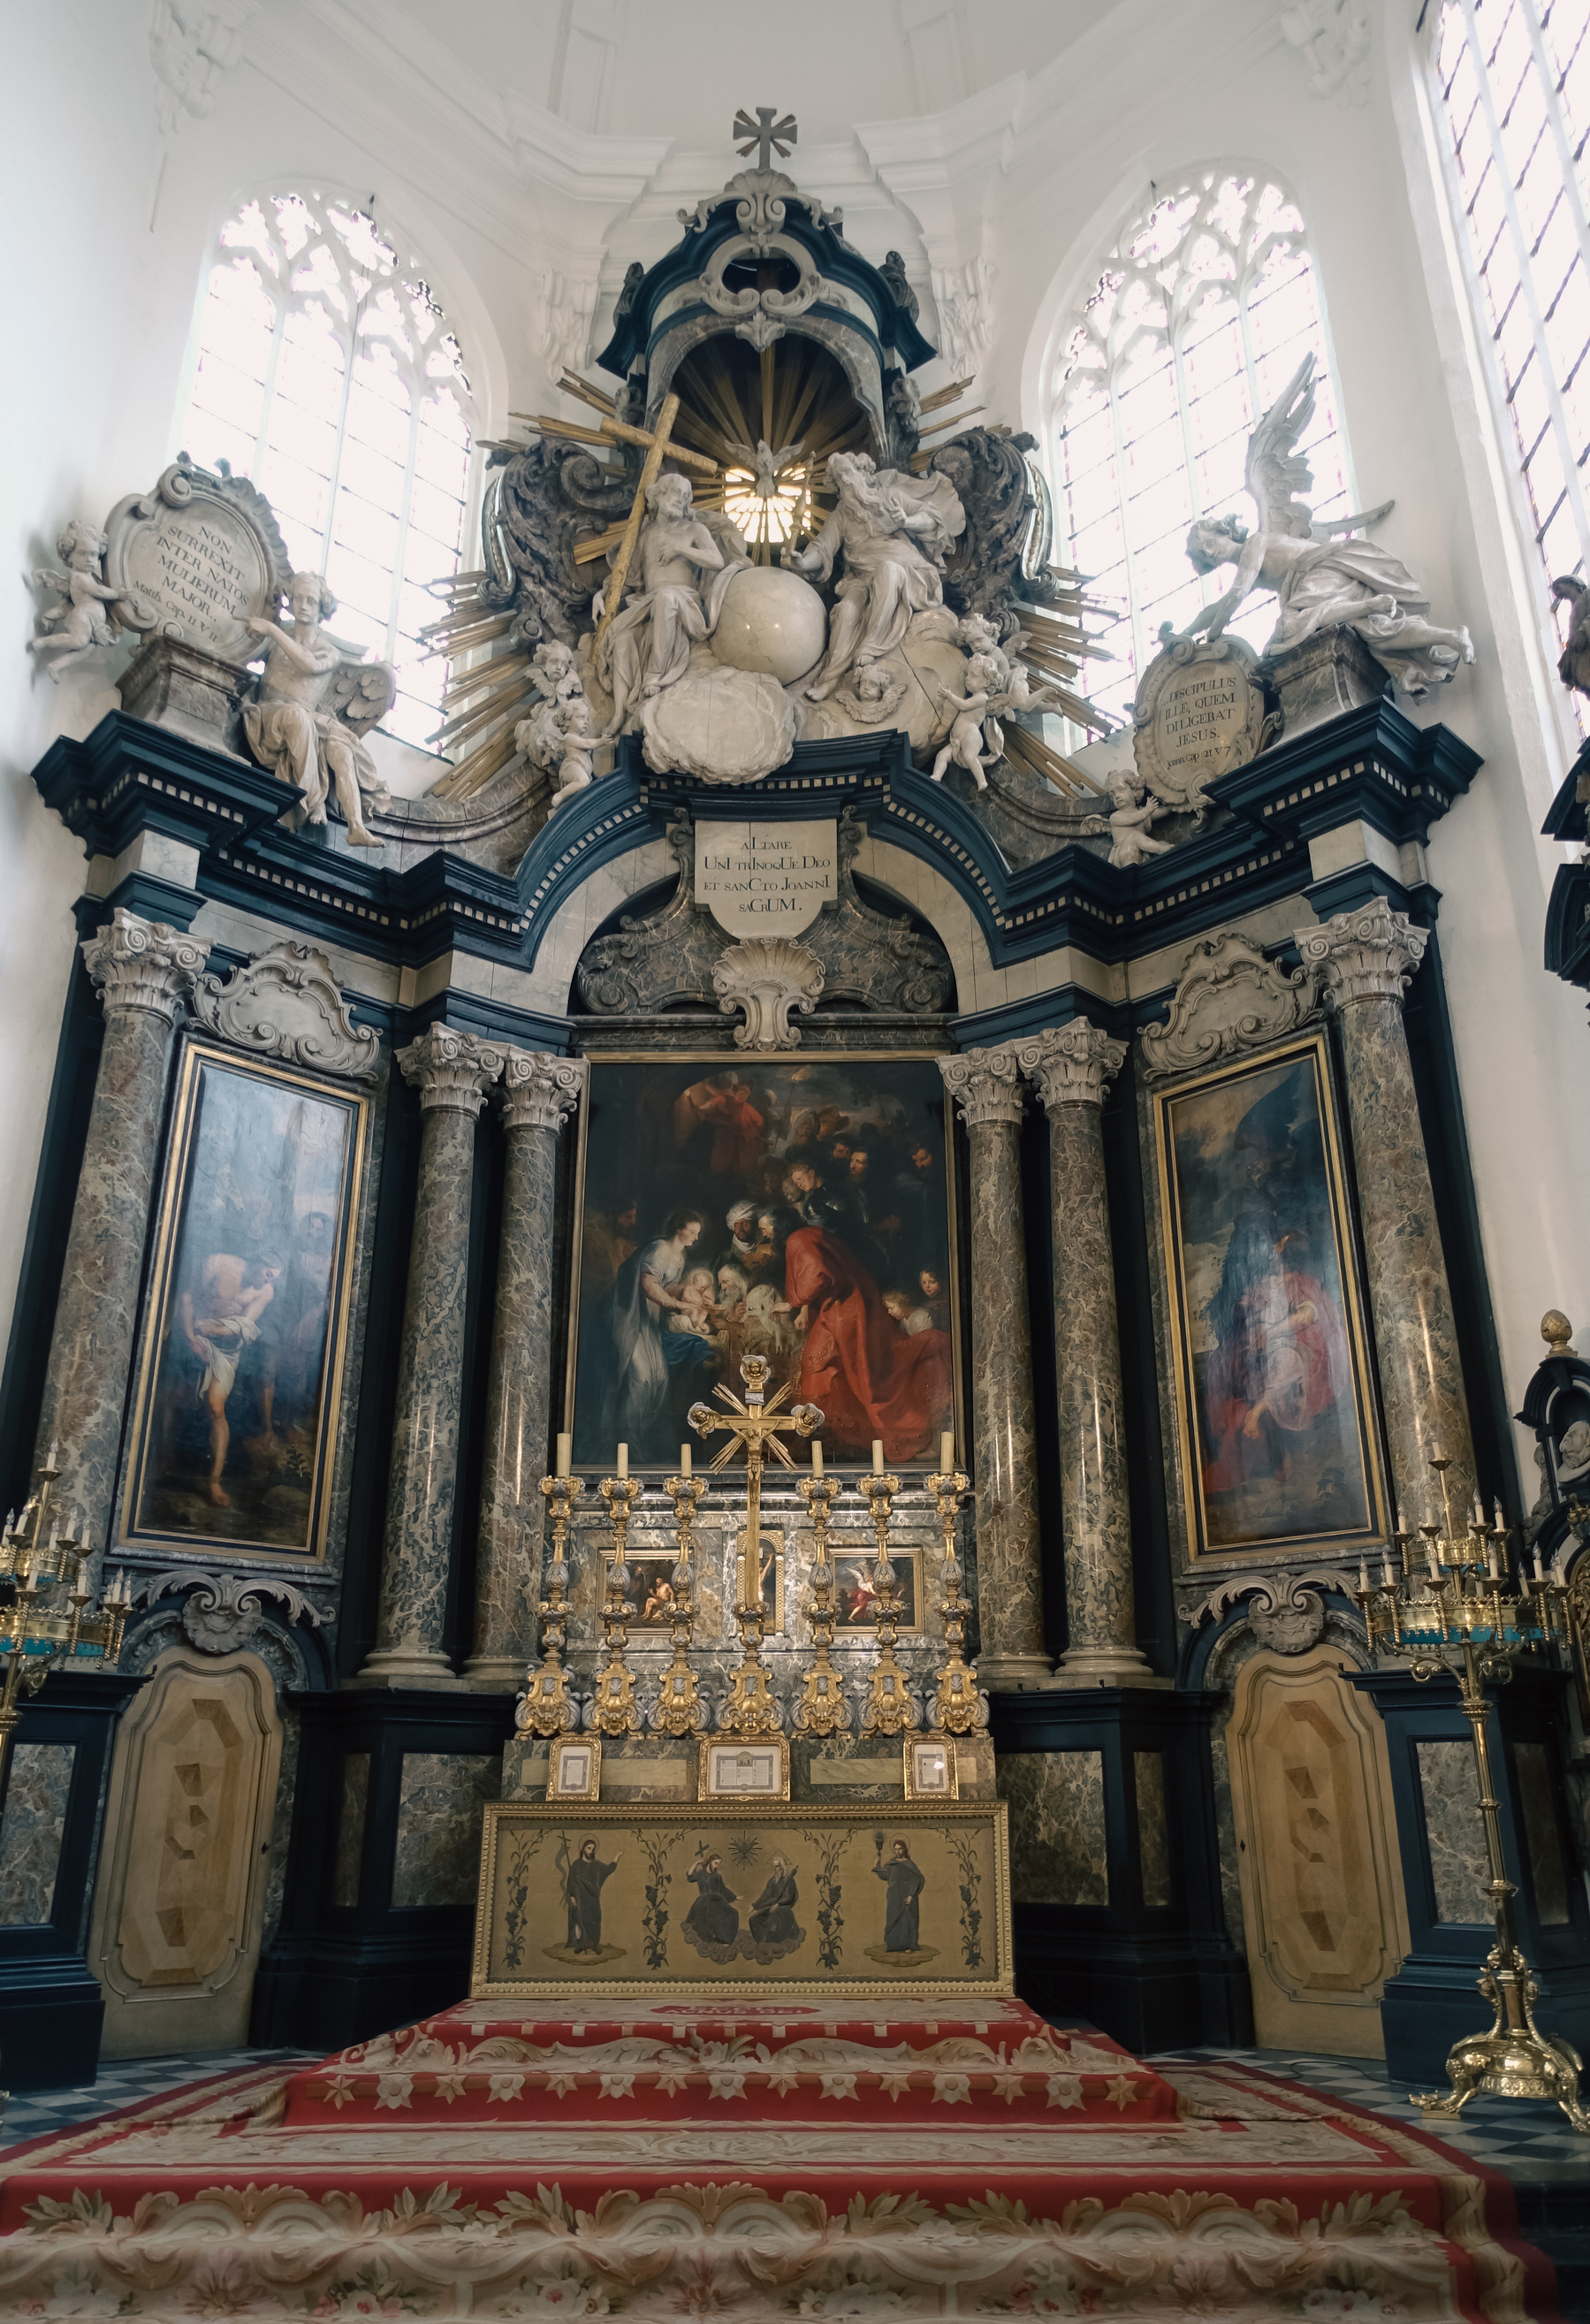 Interieur van de Sint Jan kerk in Mechelen,  met een monumentaal altaarstuk van Rubens